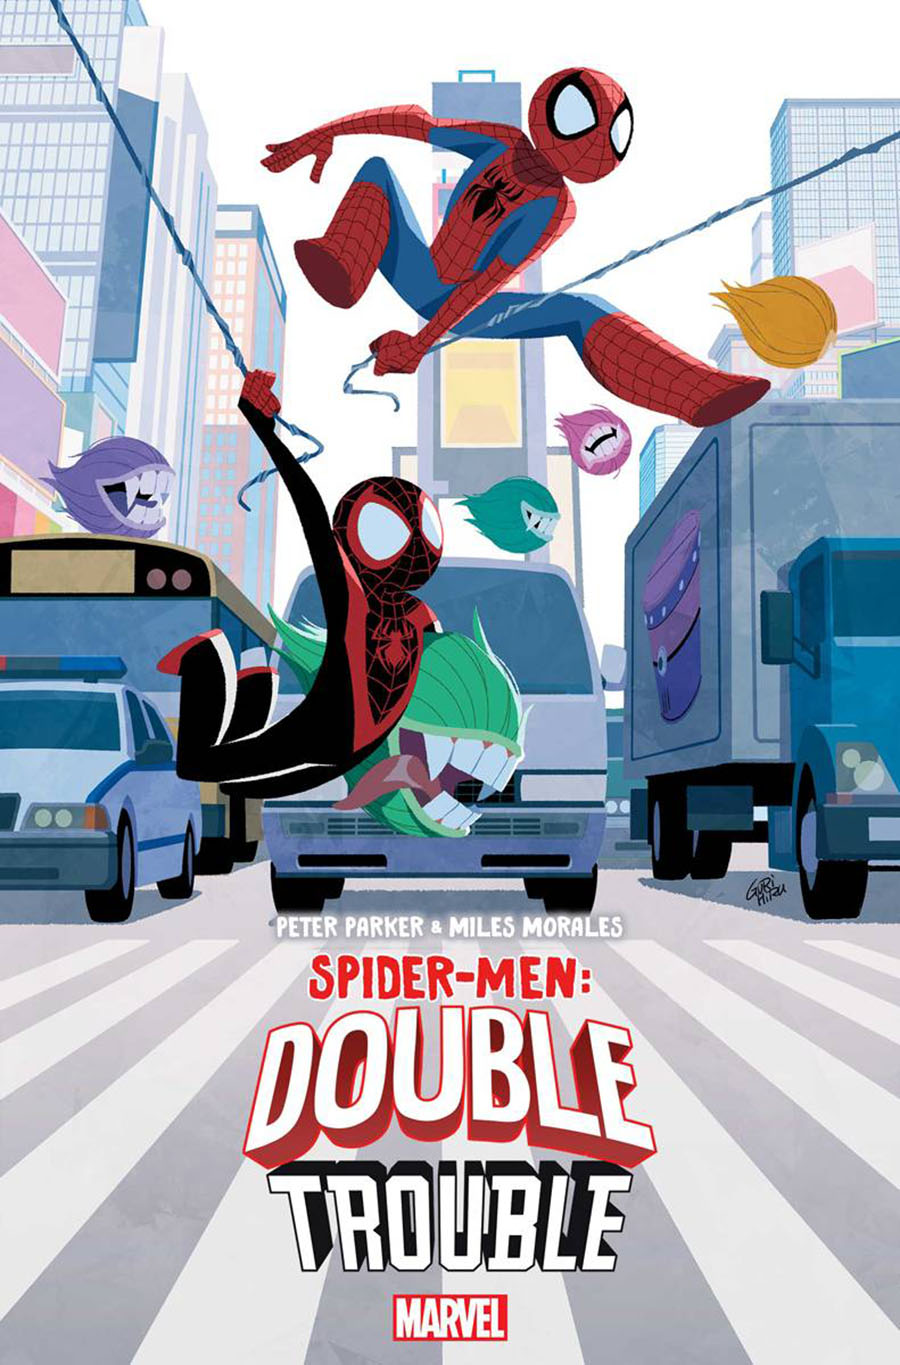 Peter Parker & Miles Morales Spider-Men: Double Trouble